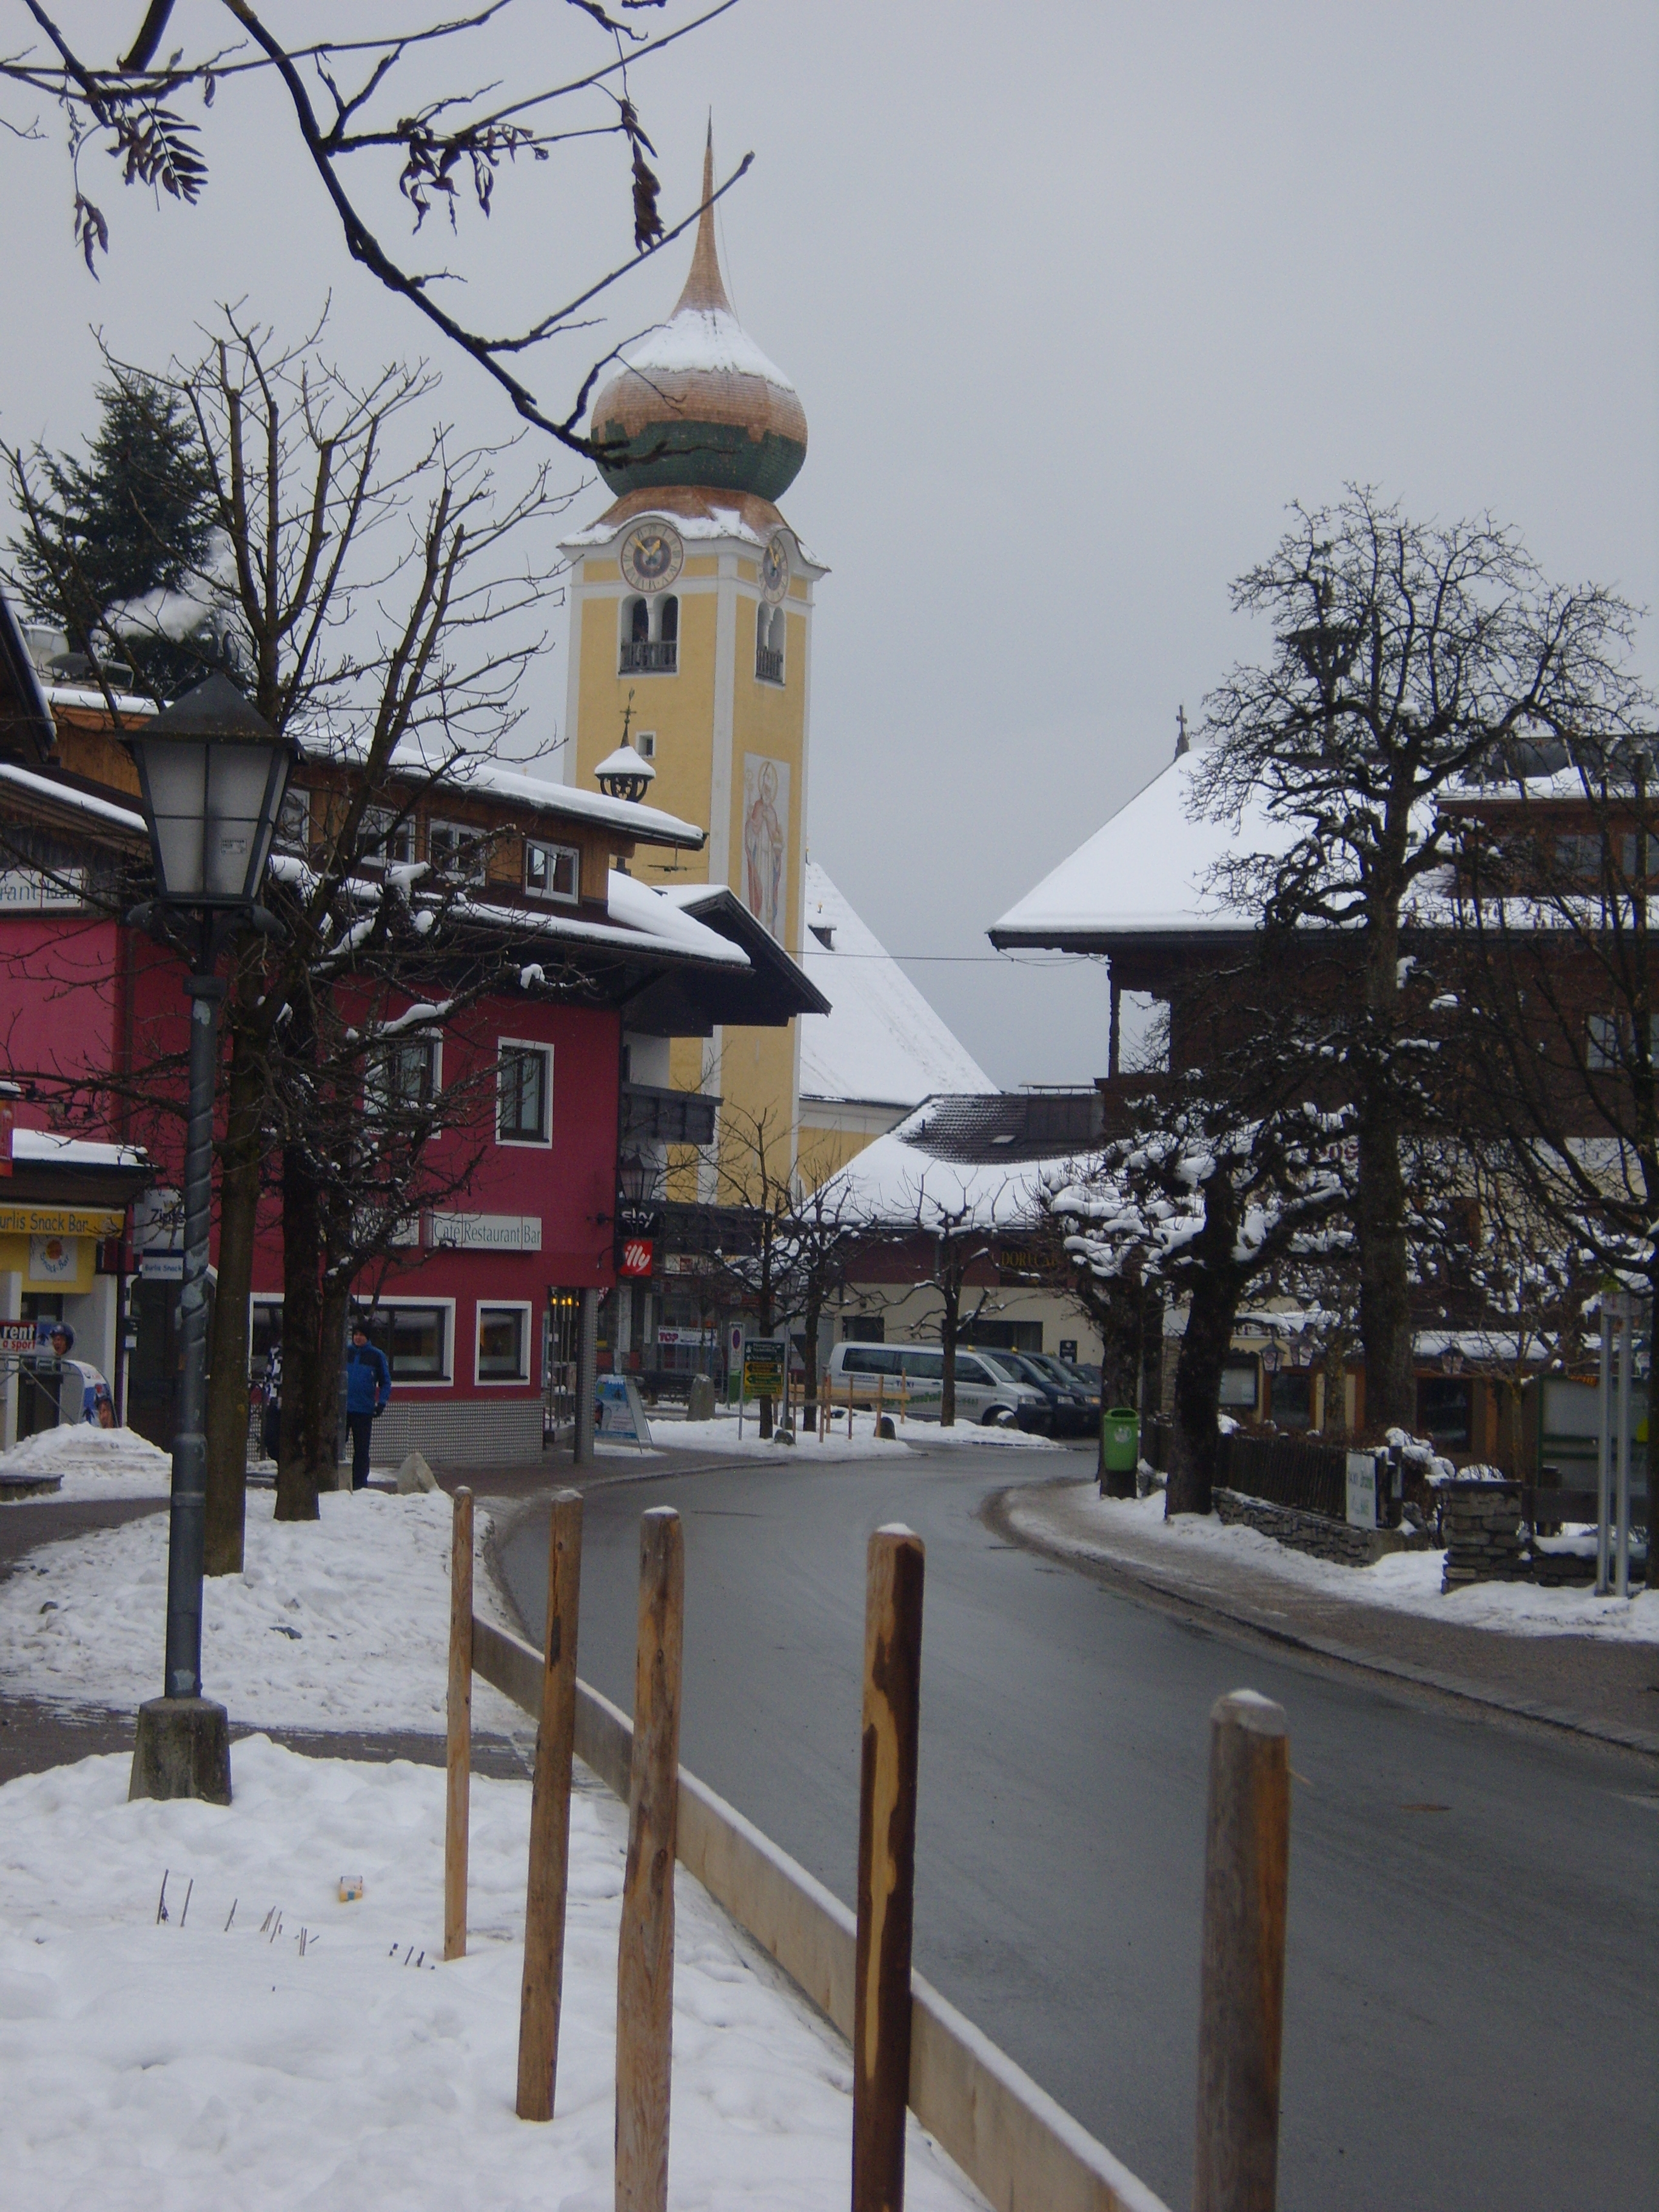 The Village, Westendorf